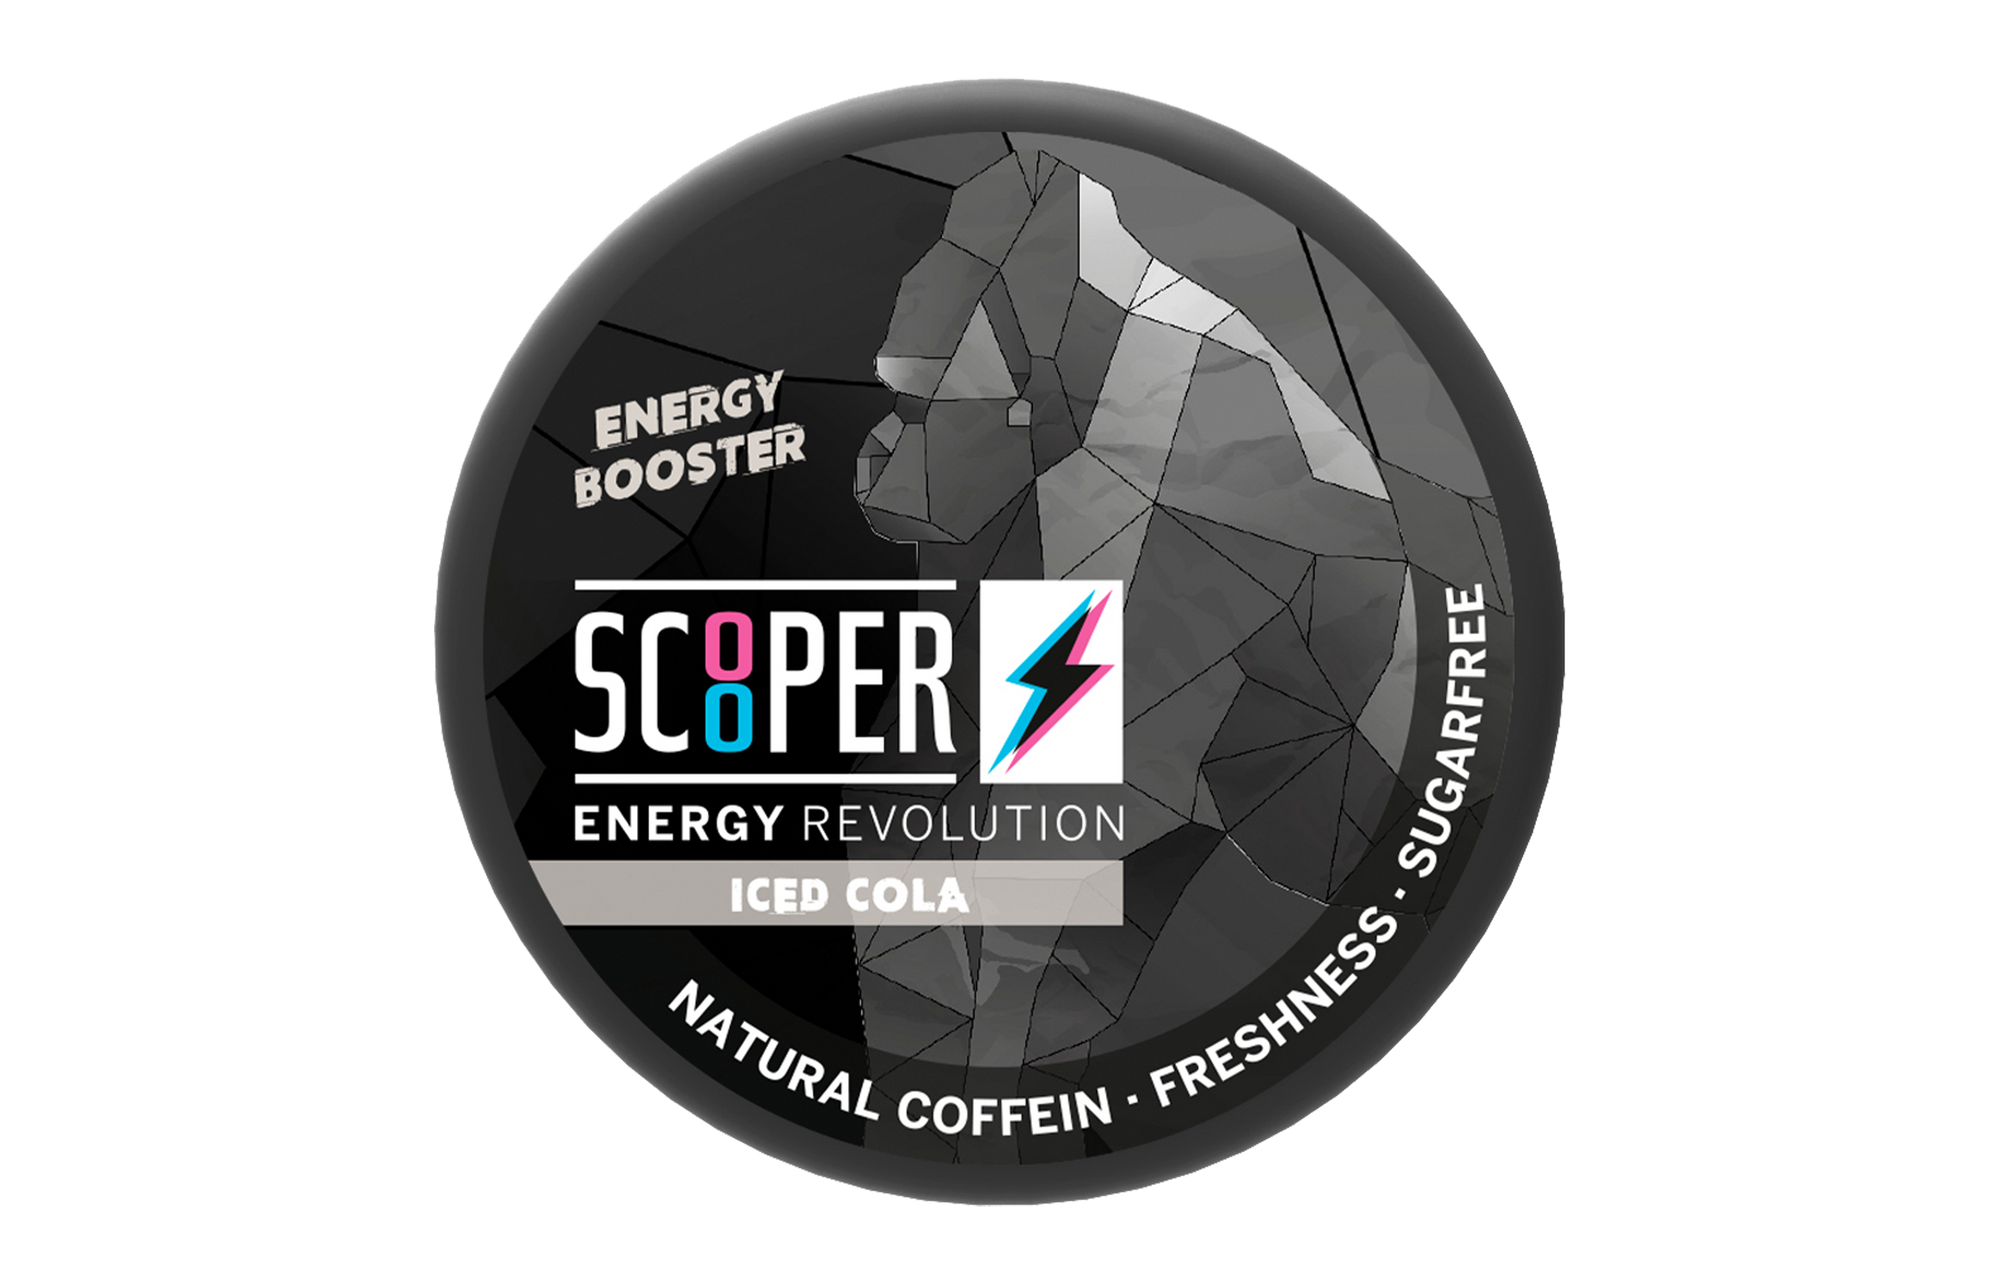 Scooper Energy Iced Cola